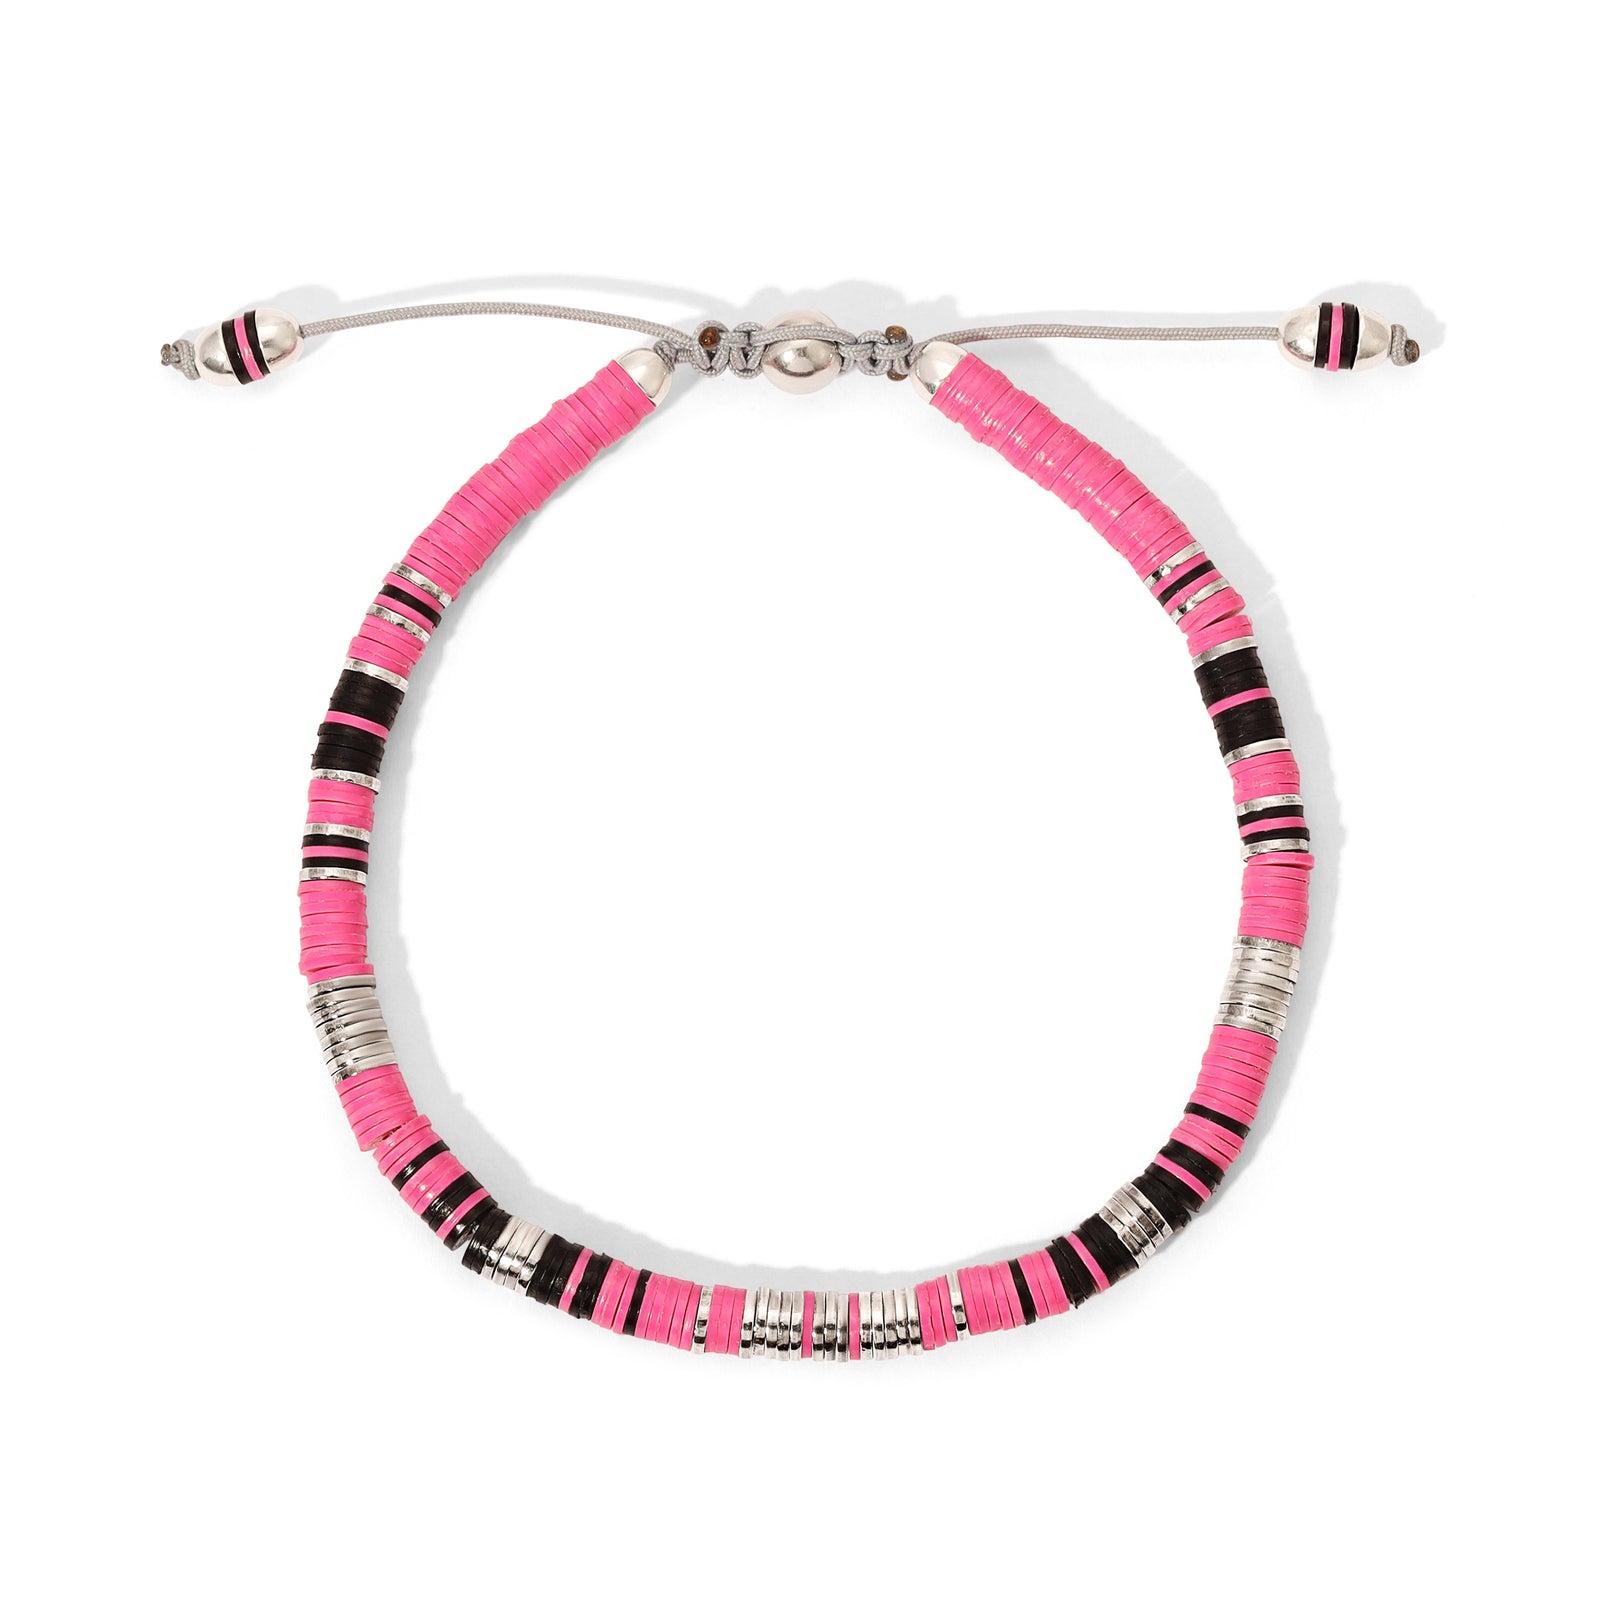 Rizon Bracelet I Hot Pink Pattern I Sterling Silver